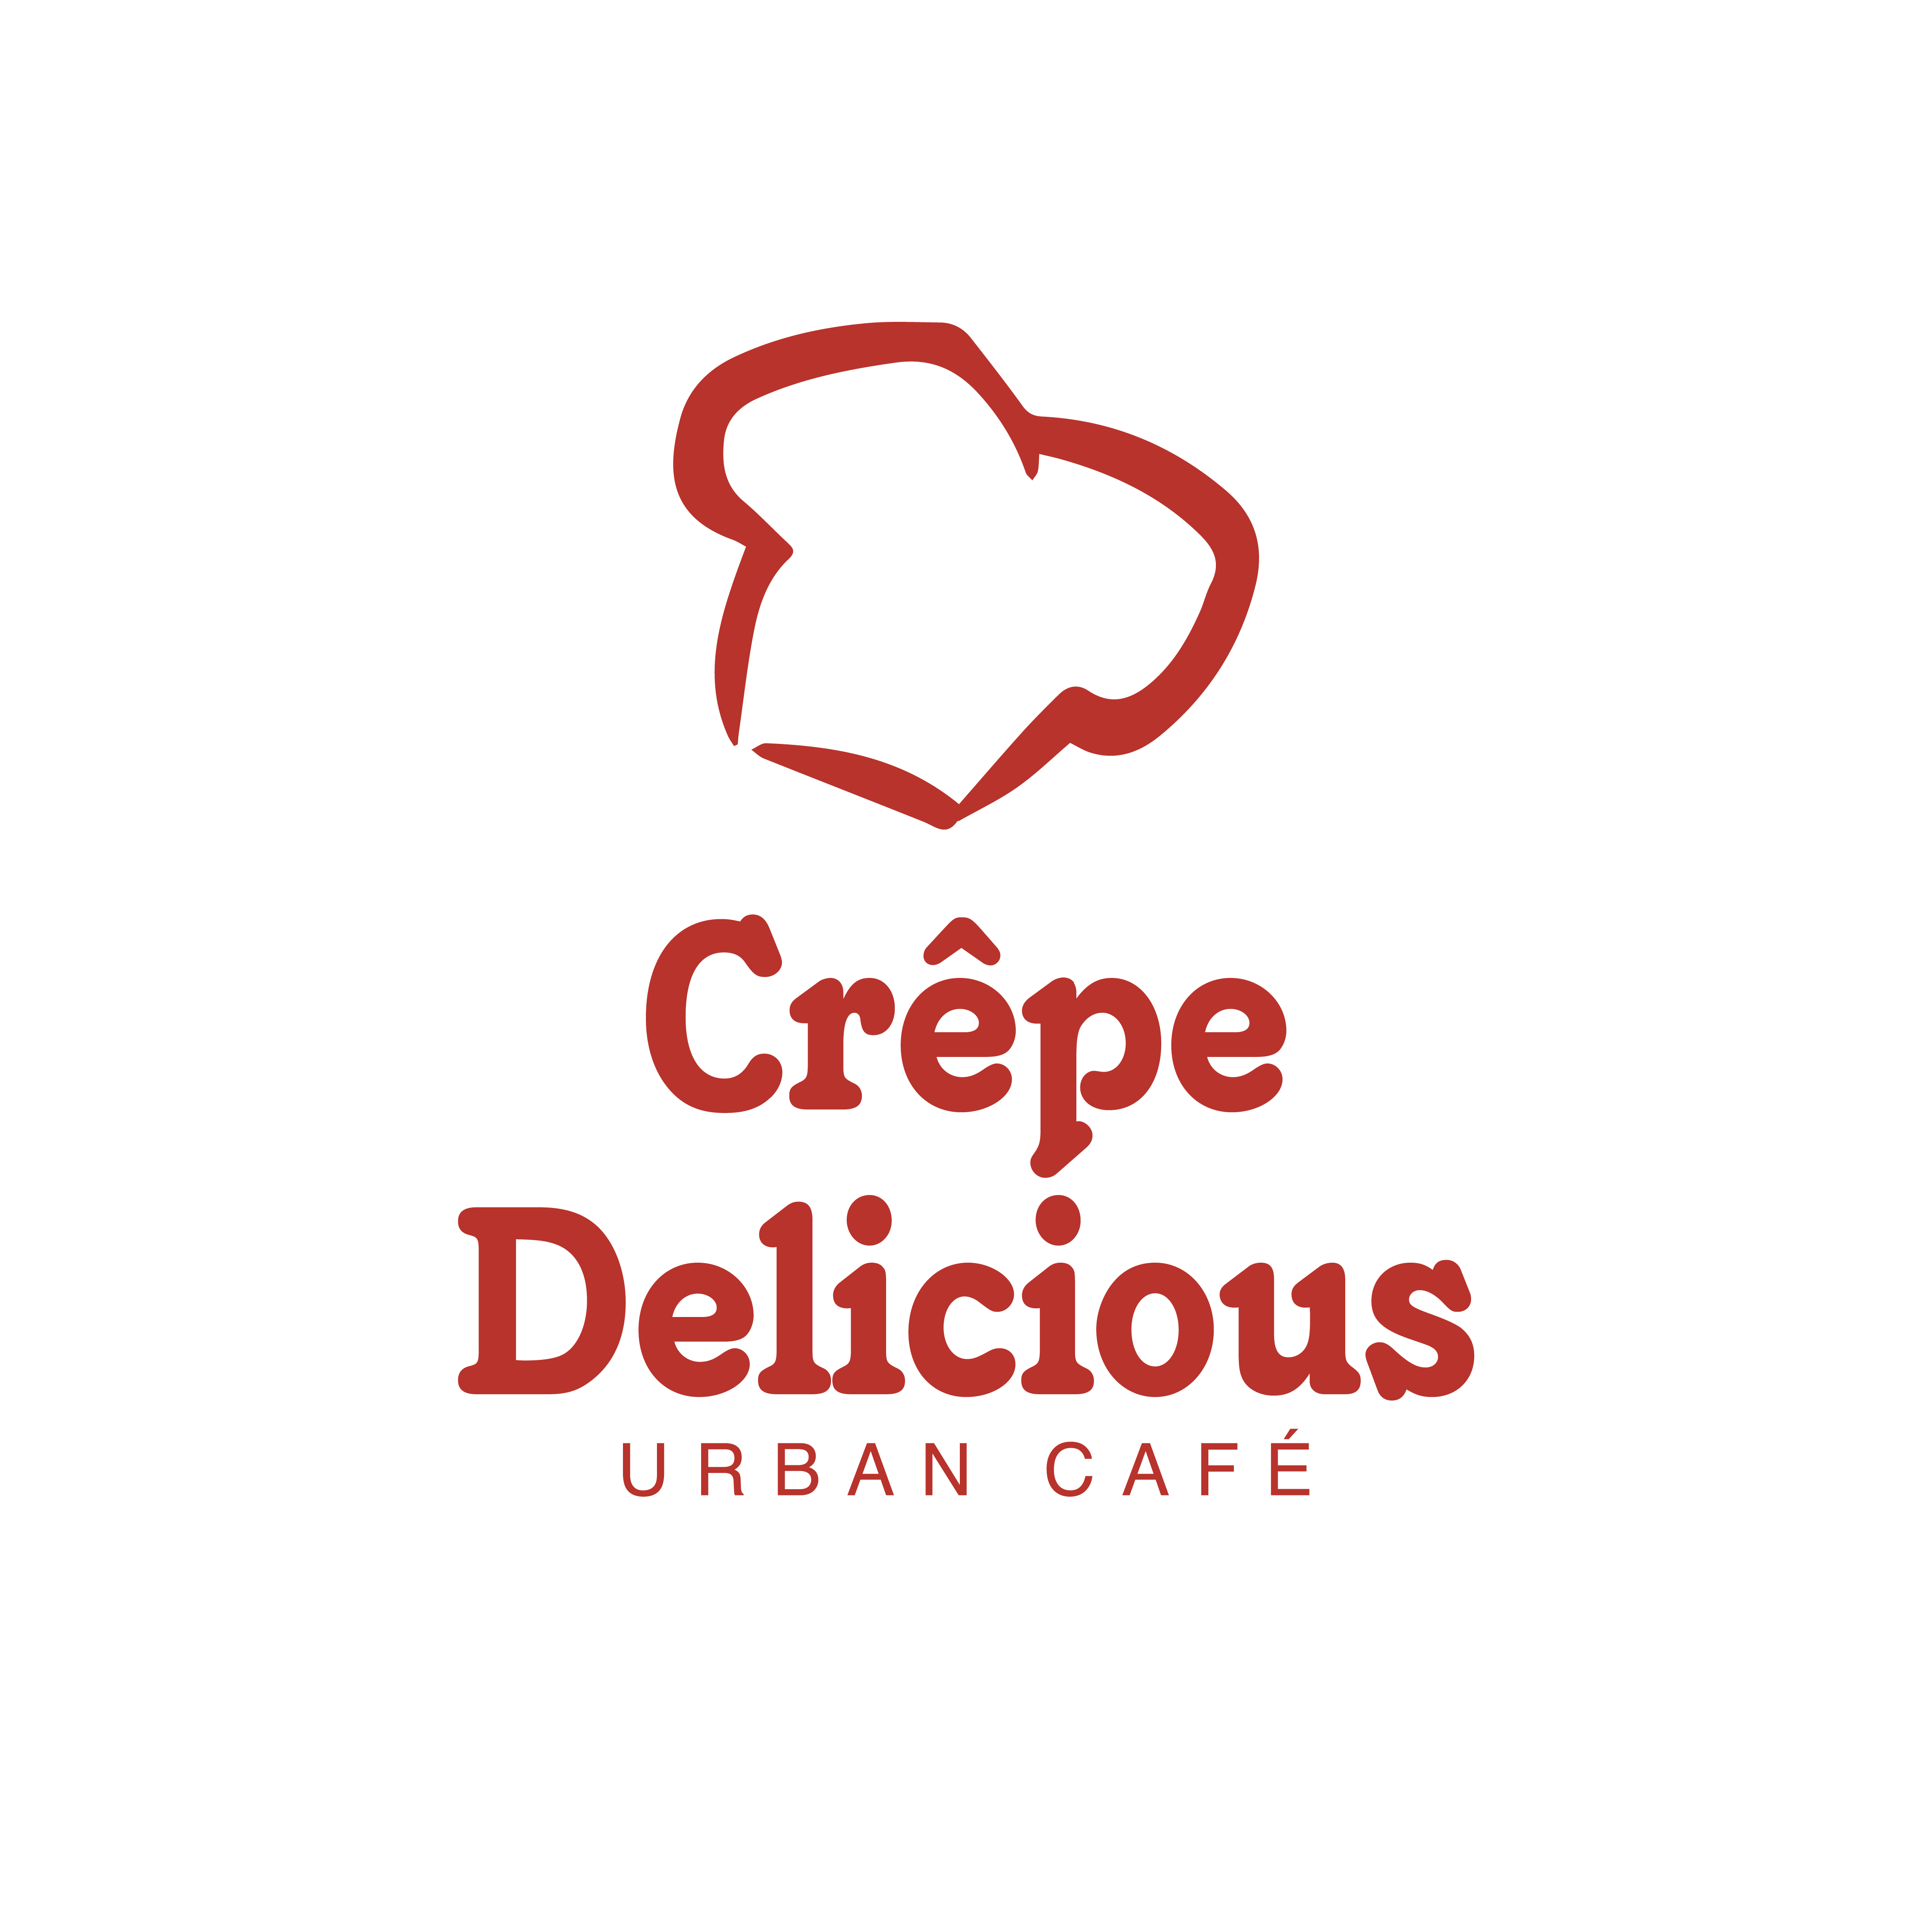 Crepe Delicious Urban Cafe logo